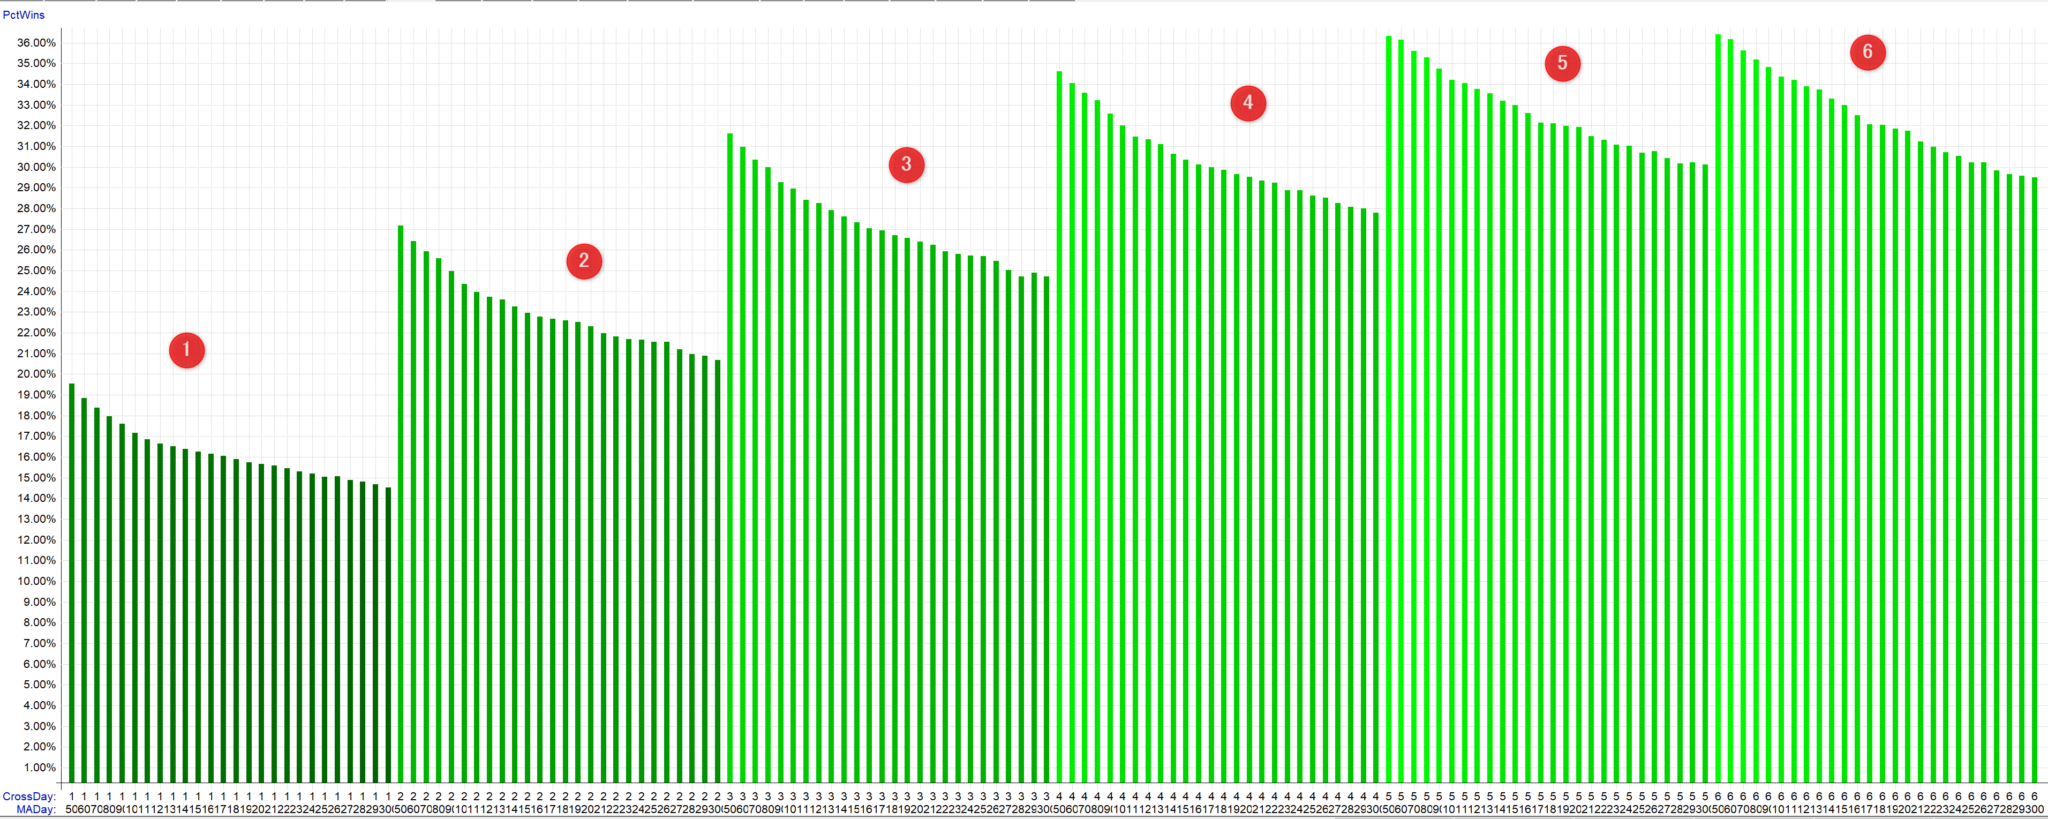 移動平均線と終値のクロス手法　X日連続引け版　【株式市場(S&P500)でバックテスト】勝率の比較